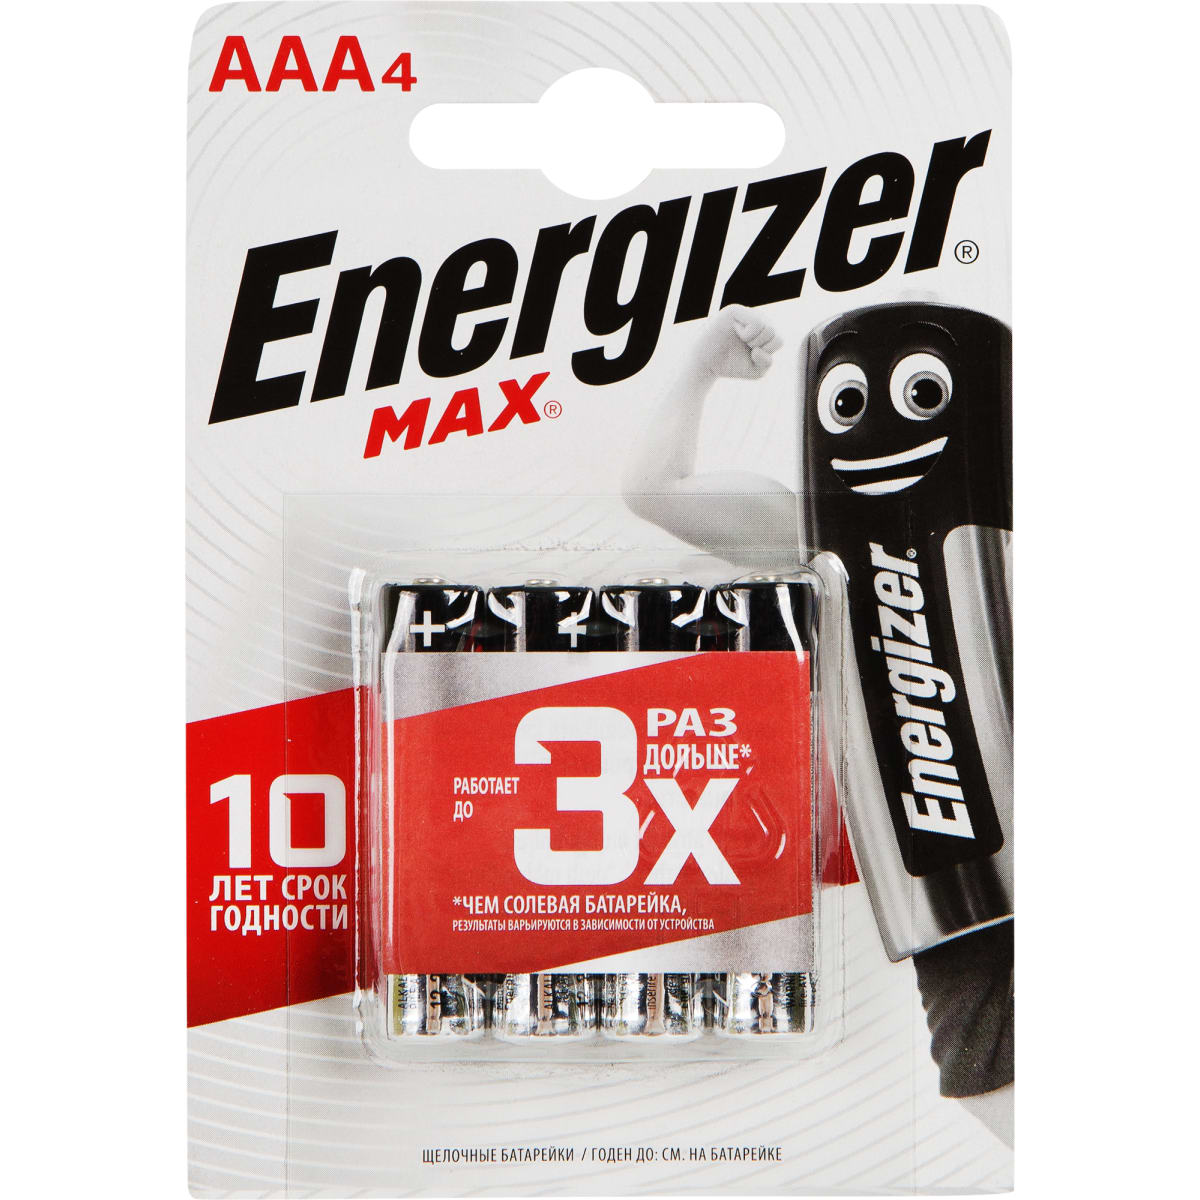 Батарейка Energizer Max AAA4 LR03 1шт...